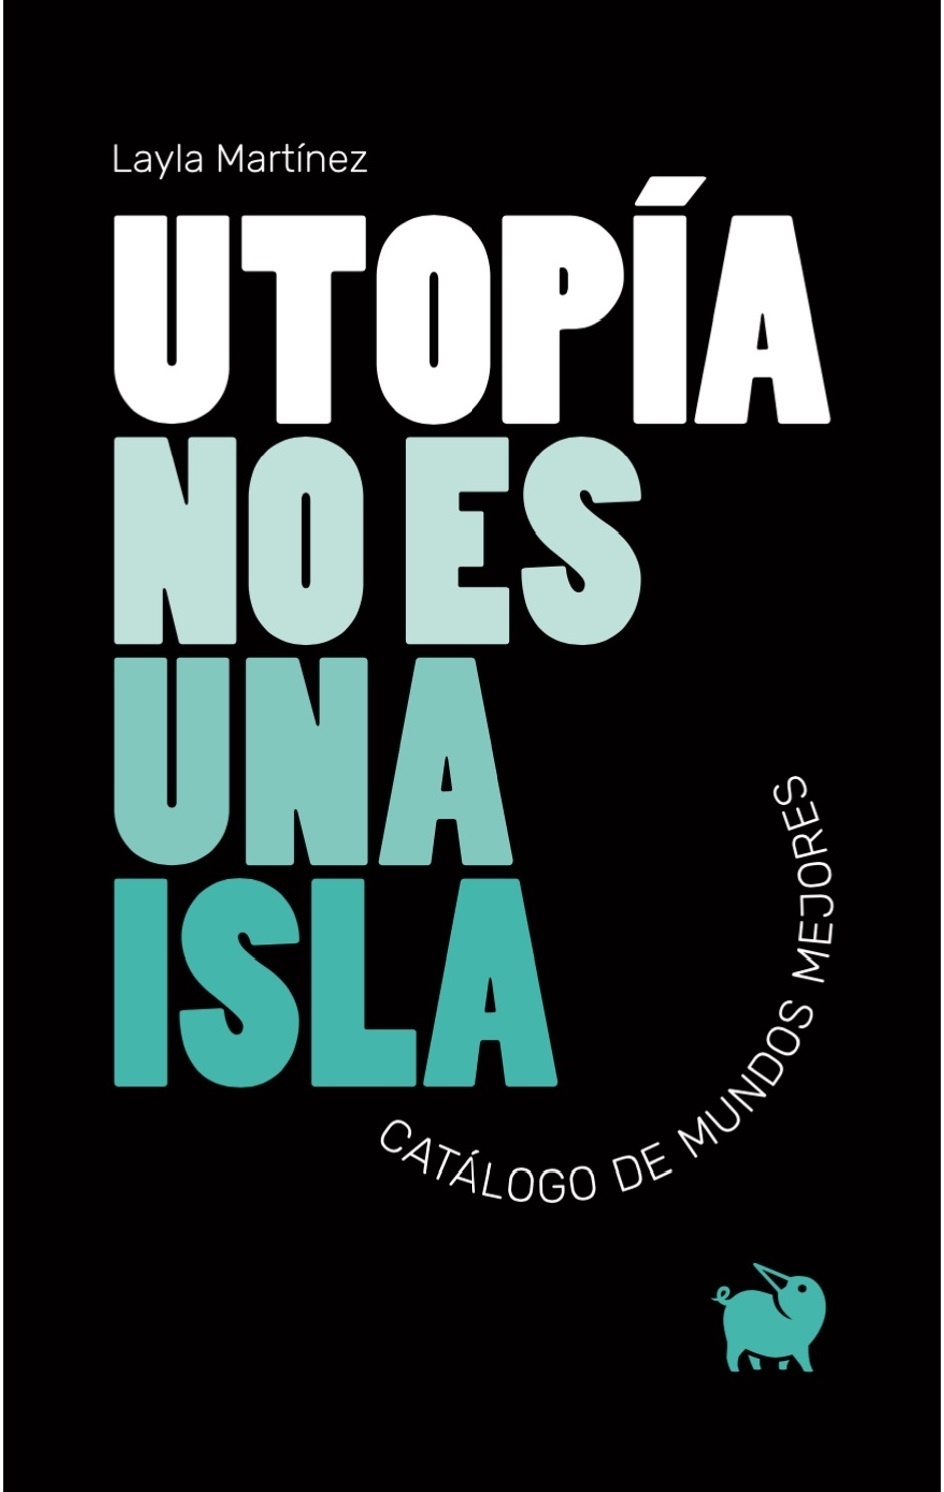 Utopía no es una isla "Catálogo de mundos mejores"